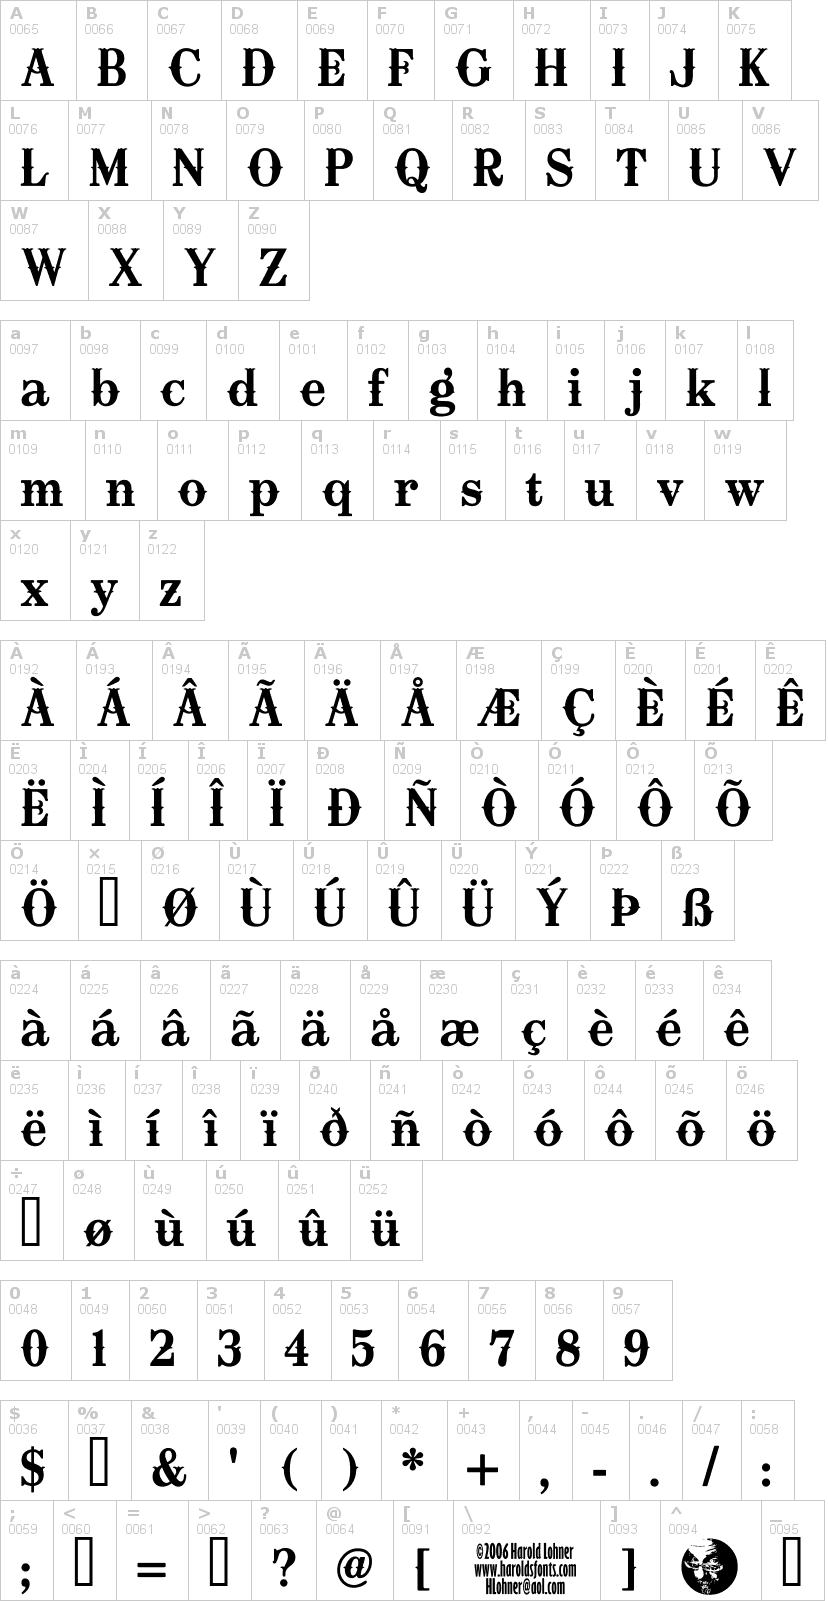 Lettere dell'alfabeto del font oklahoma con le quali è possibile realizzare adesivi prespaziati